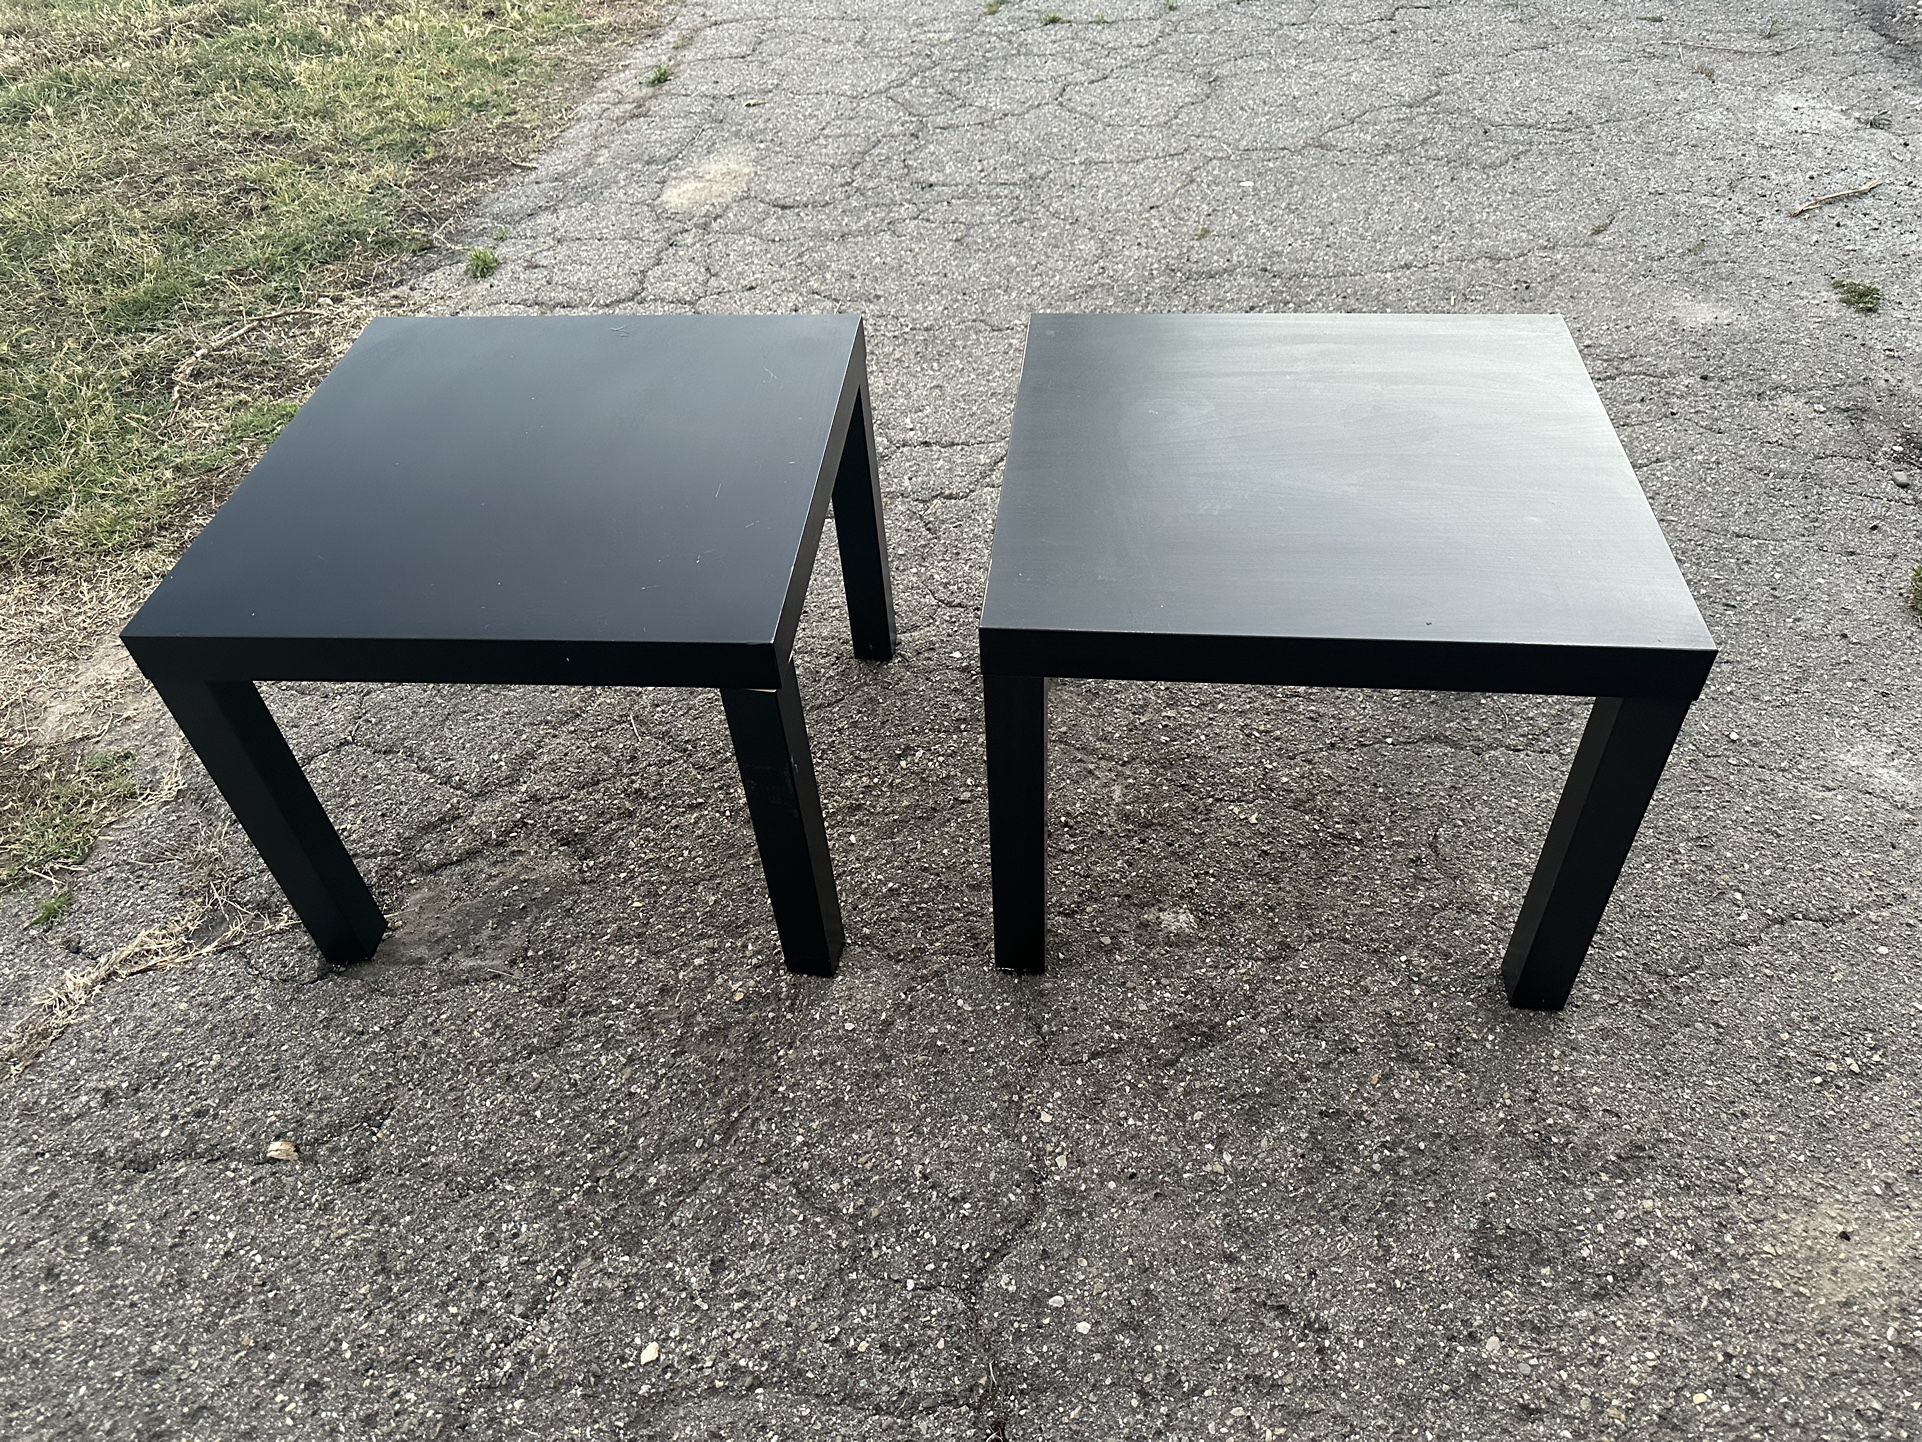 Black Side Tables